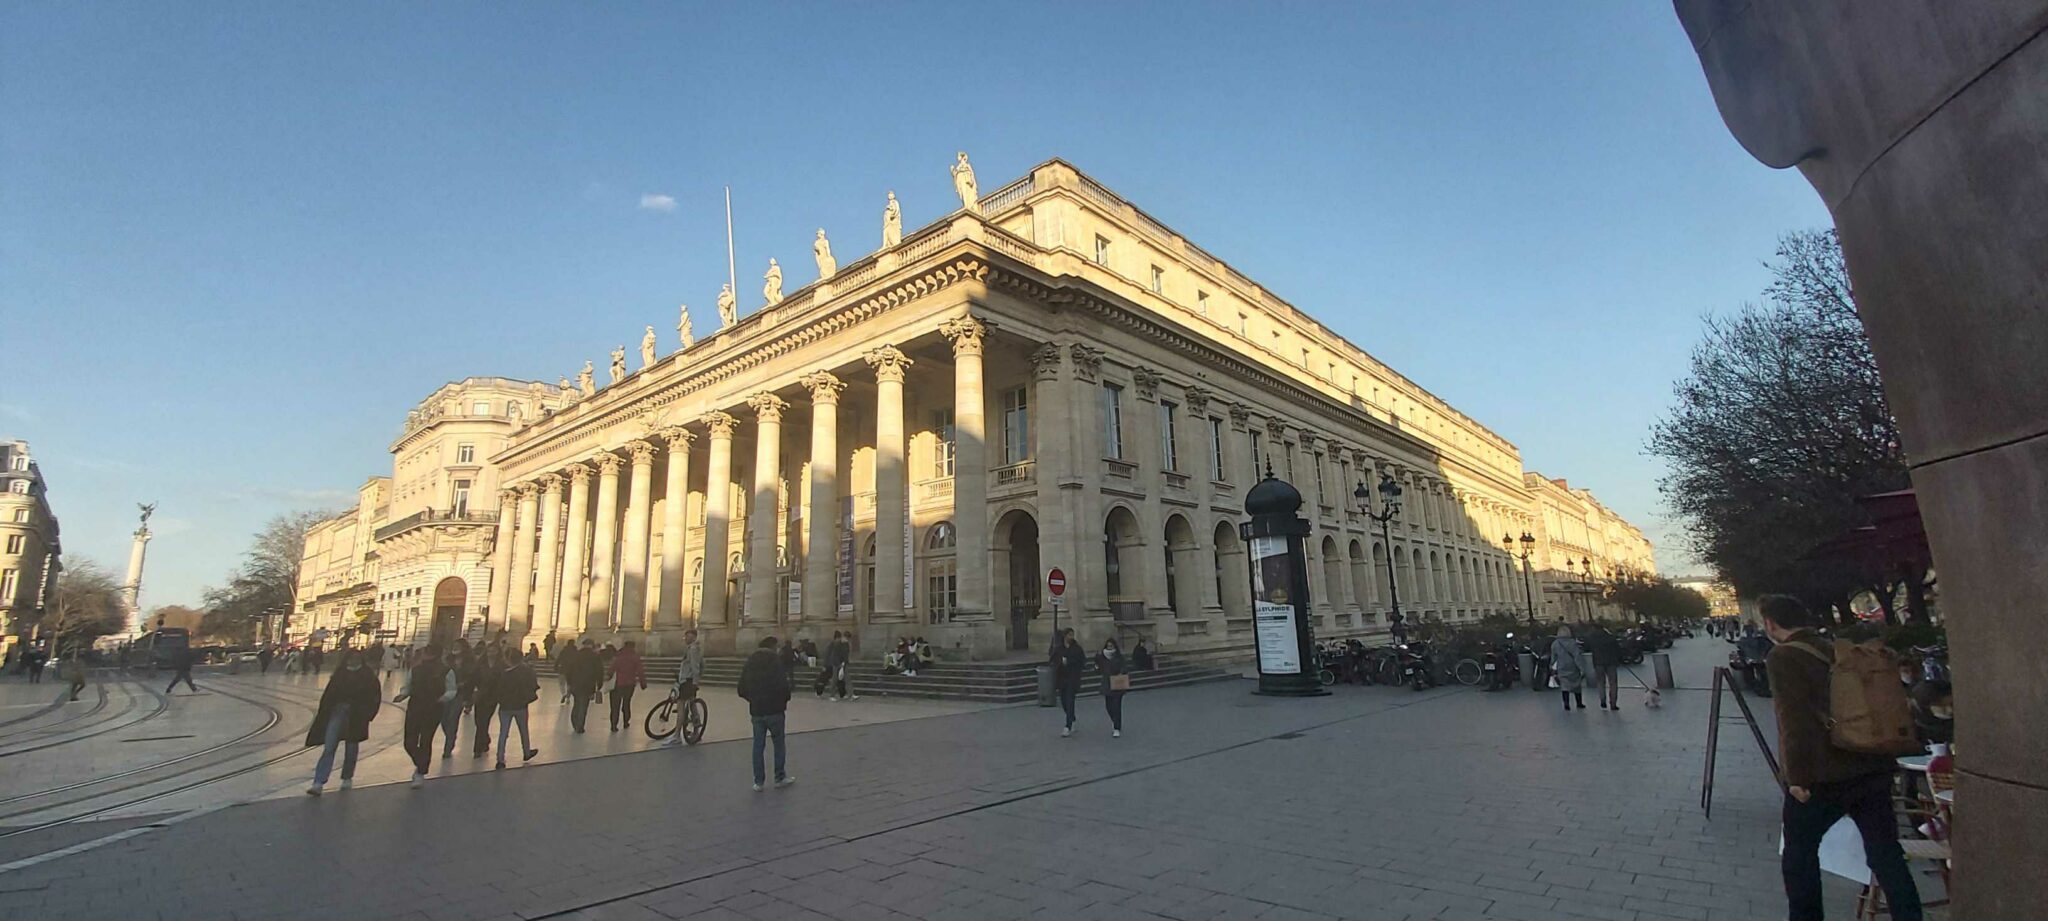 Après la défaite de la France en 1870, le pouvoir législatif fuit Paris et se réfugie à Bordeaux. Le Grand Théâtre de Bordeaux, ici, deviendra provisoirement l'Assemblée Nationale, avant de reprendre sa vocation culturelle fin 1871.